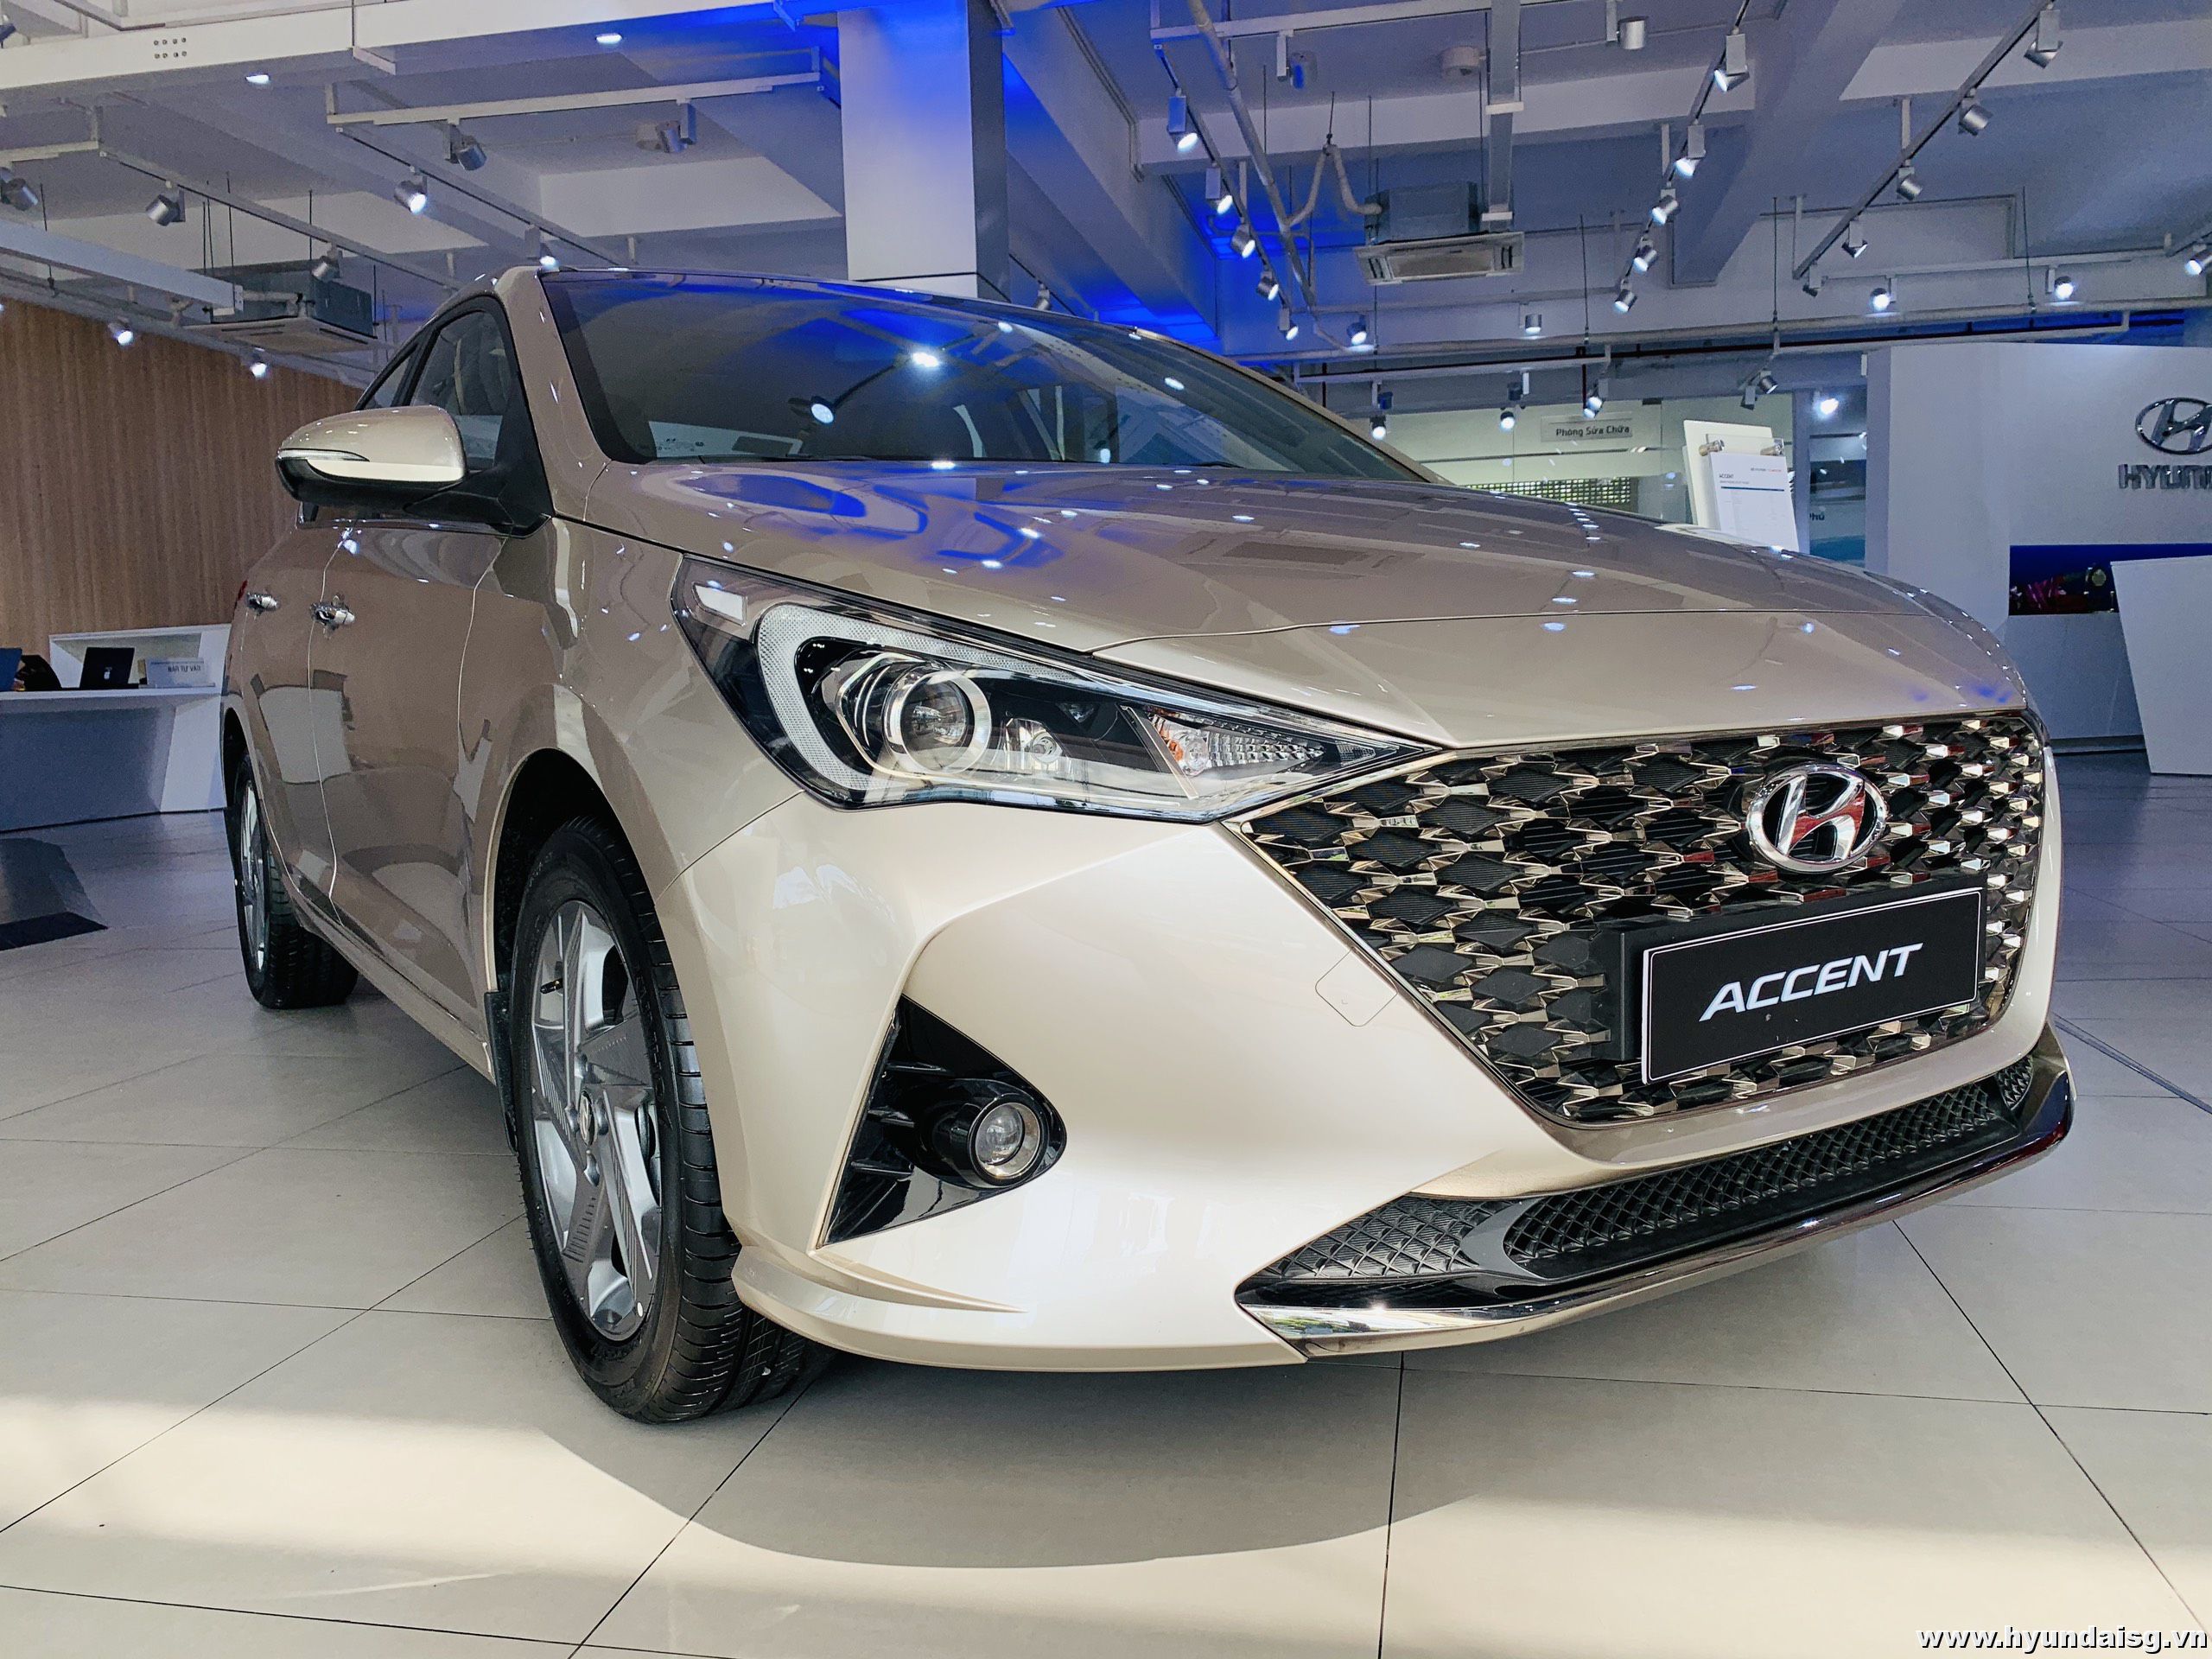 Tư vấn mua xe Hyundai Accent: Giá cả, thủ tục mua xe, bảo hành và dịch vụ sau bán hàng